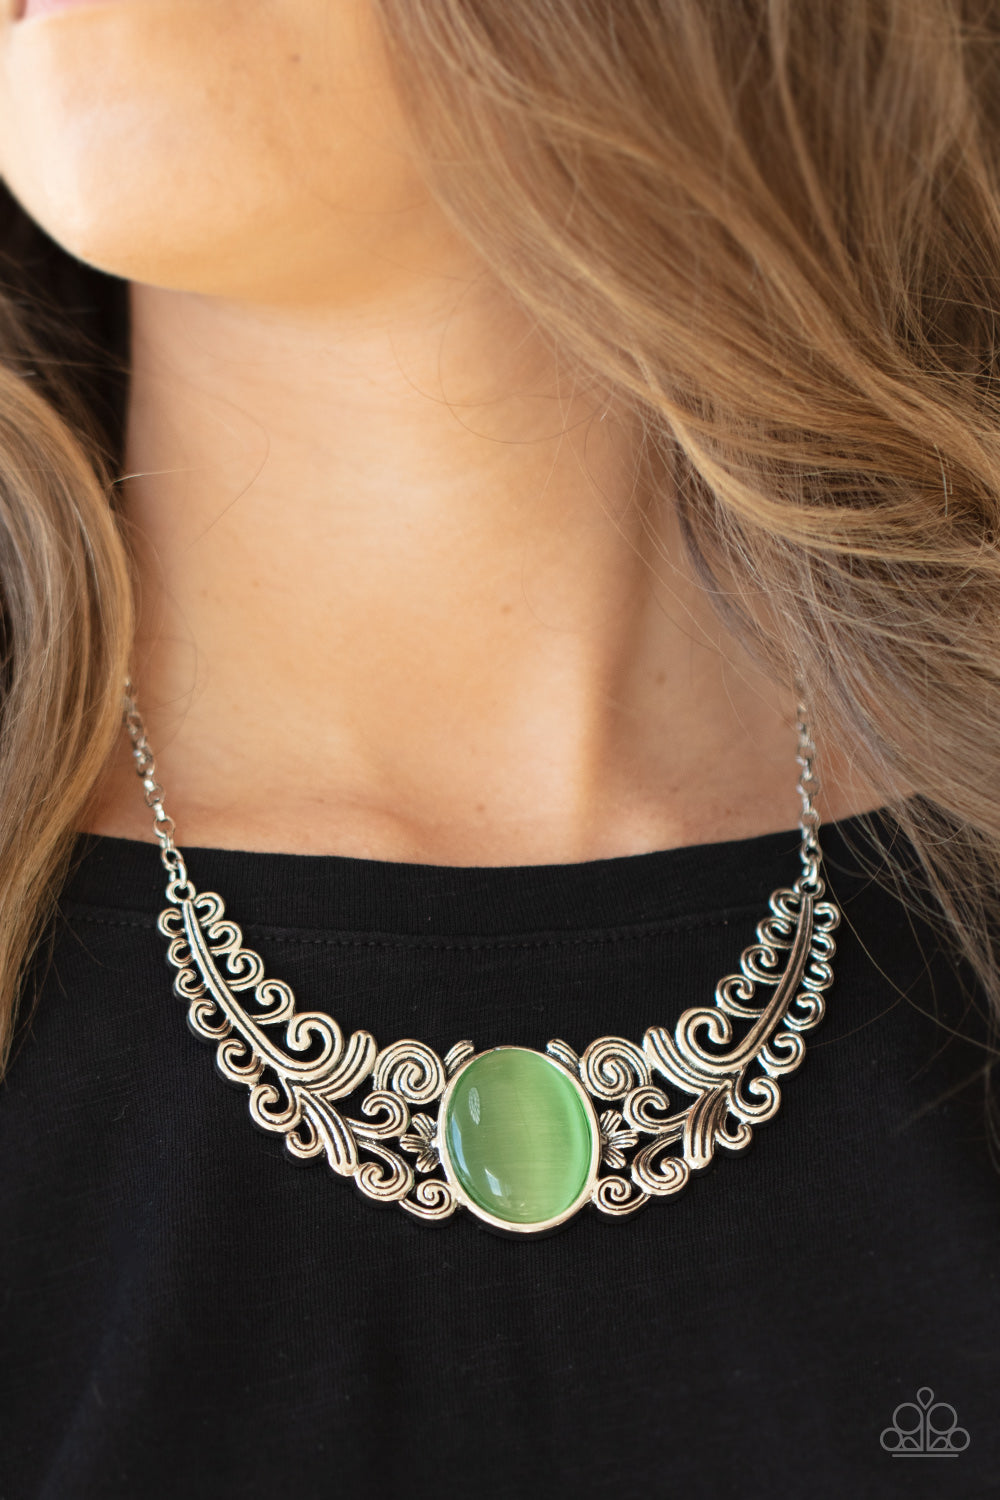 Celestial Eden - Green necklace